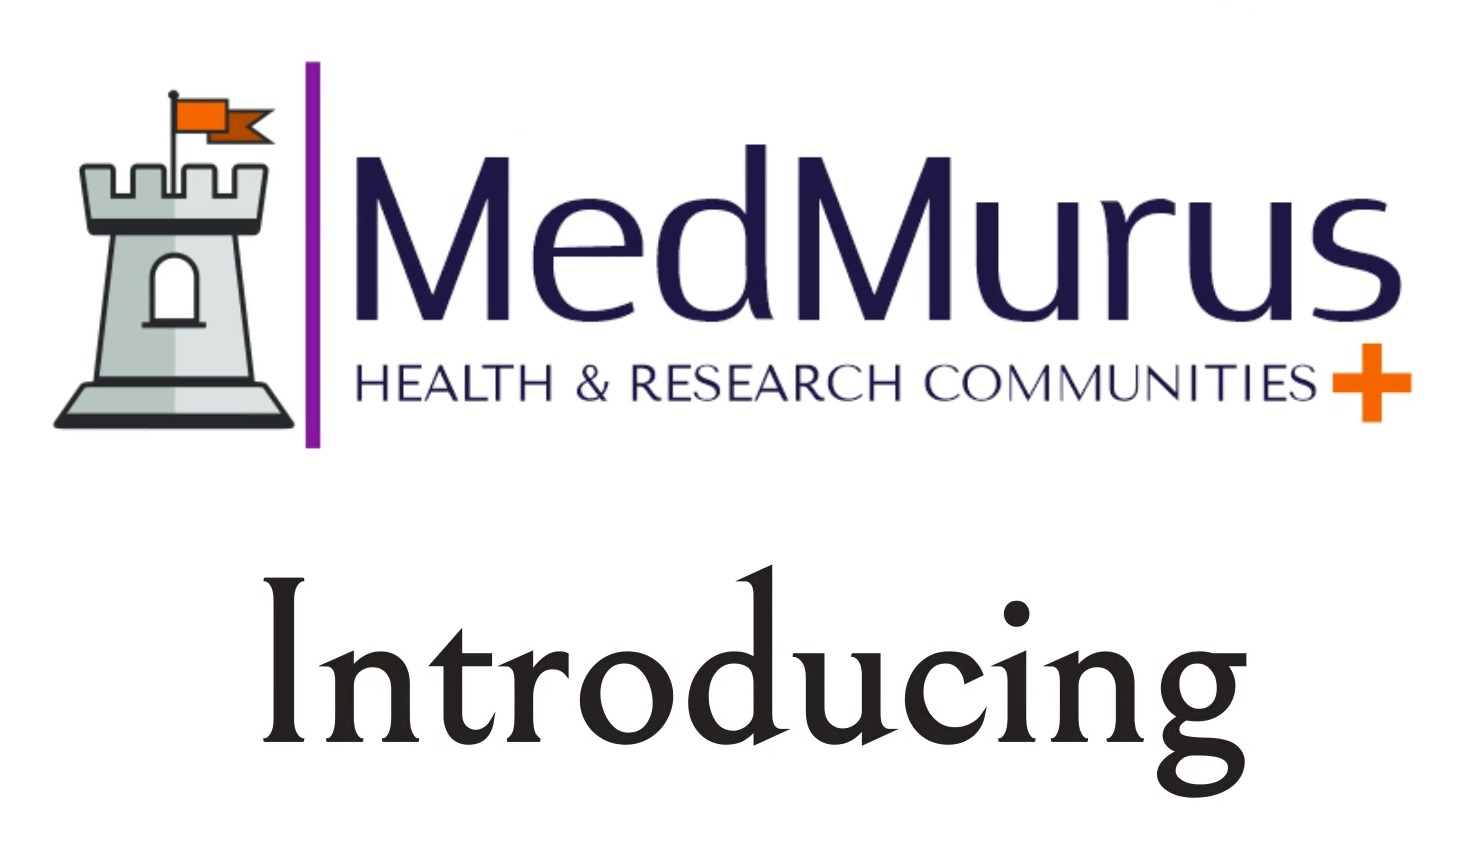 What is MedMurus?